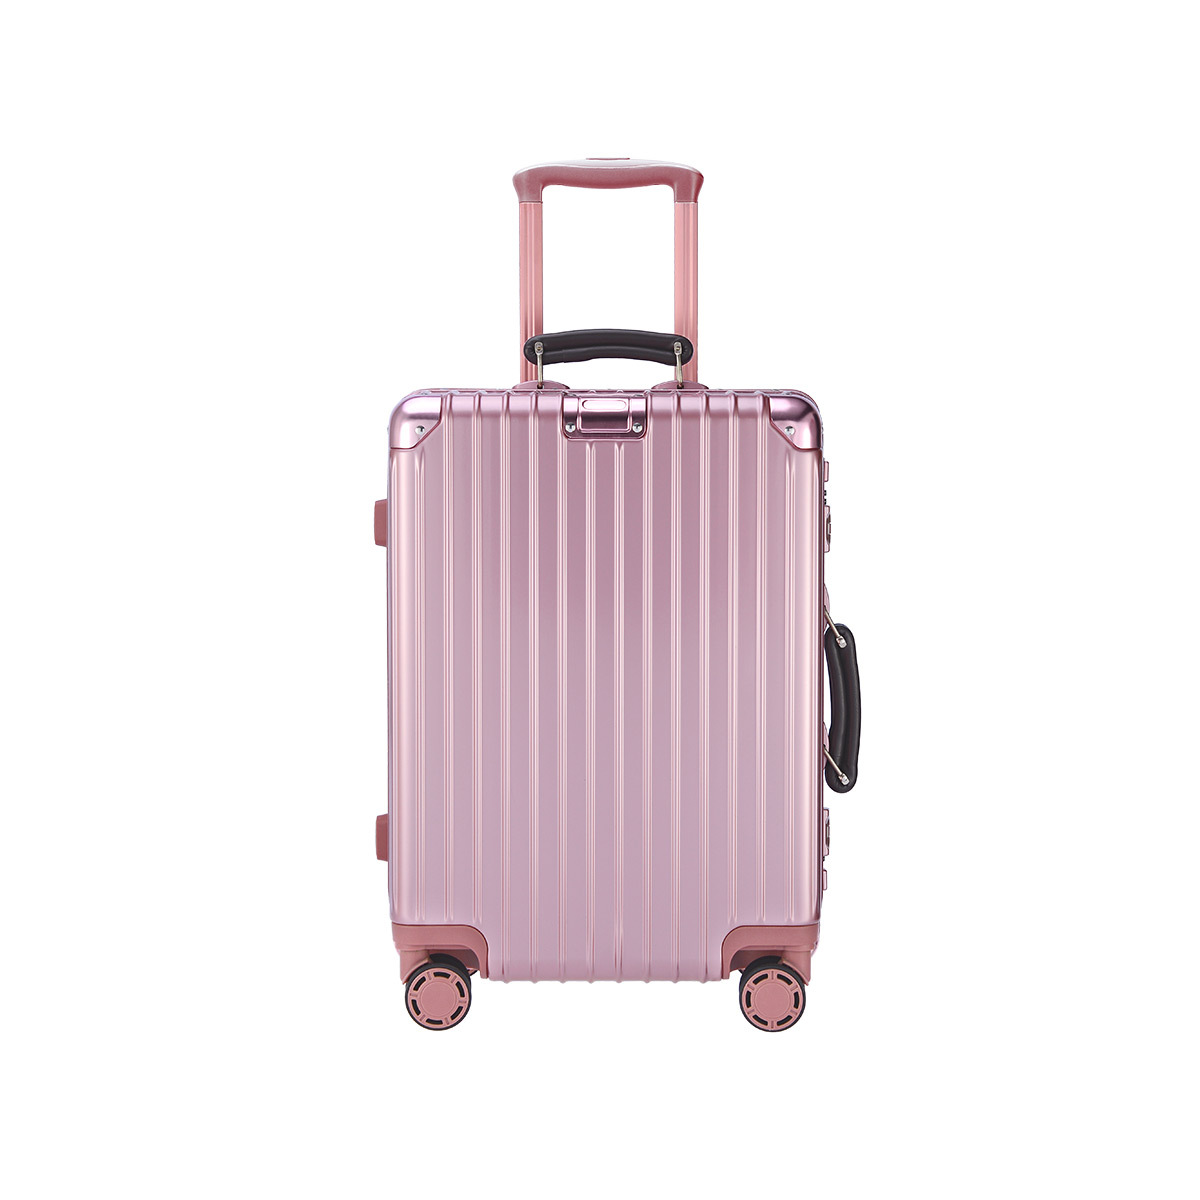 Full Aluminium Magnesium Luggage 